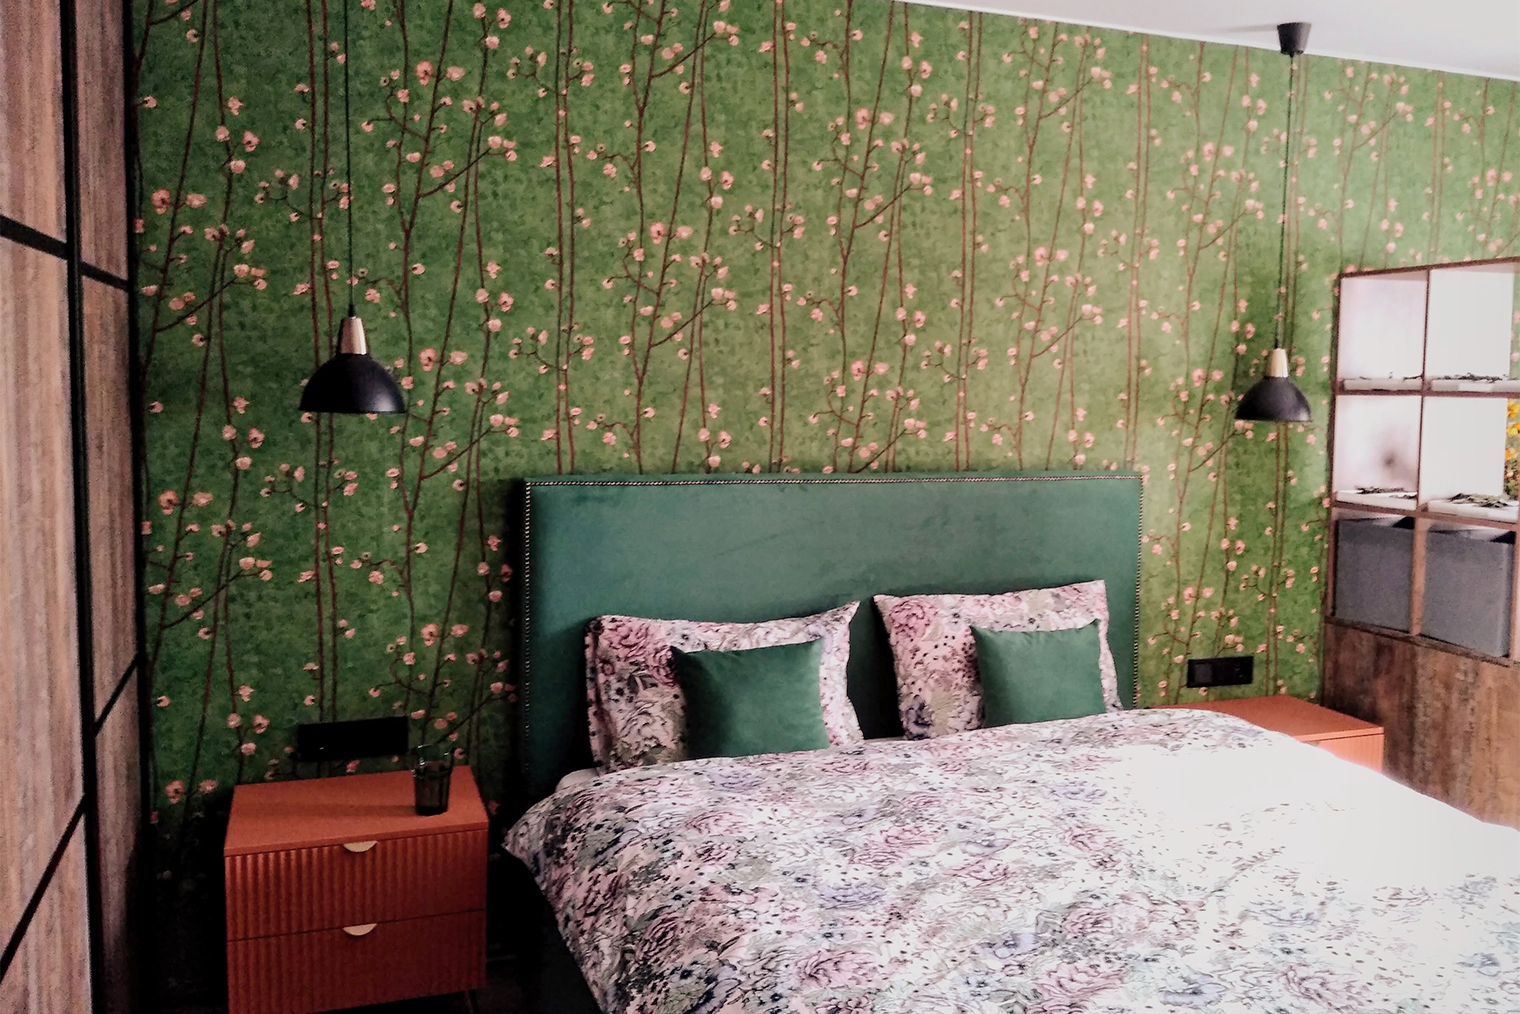 Наша спальня. Зеленые обои с цветами напоминают живопись Ван Гога